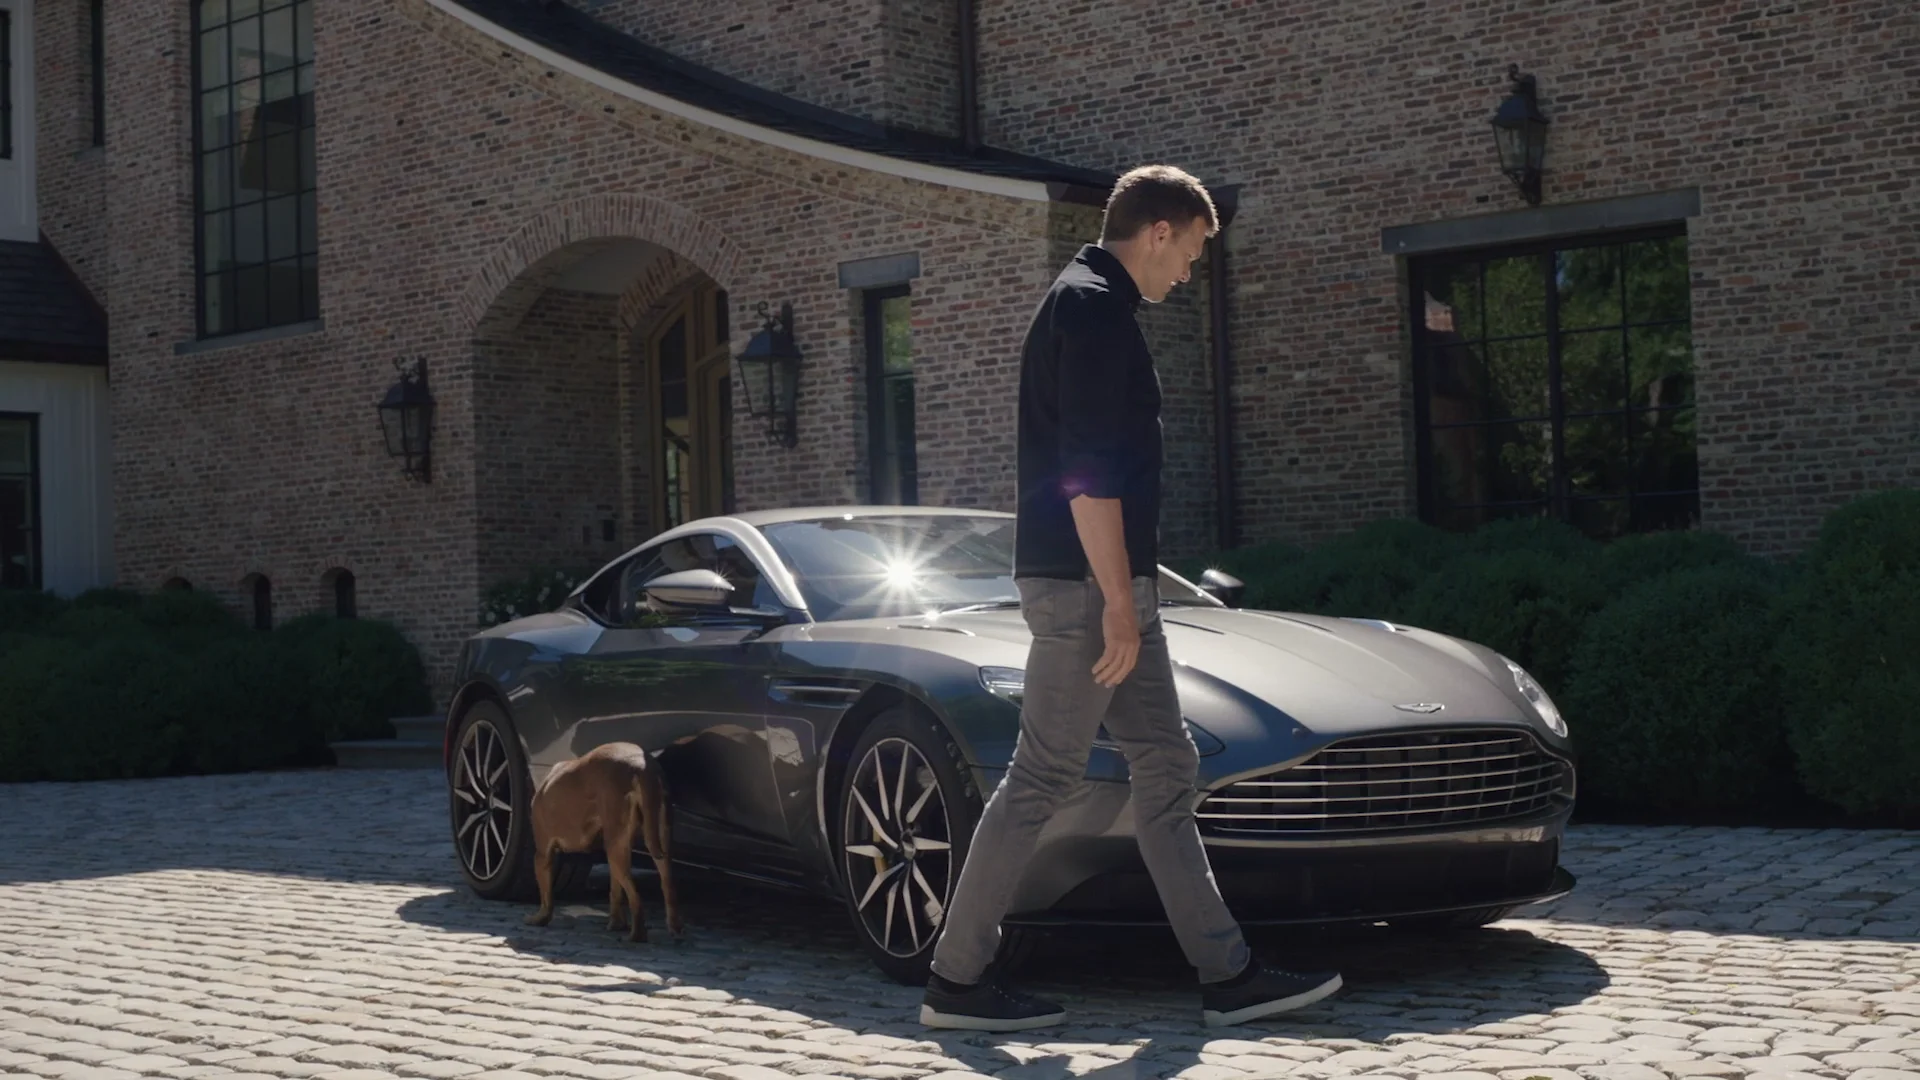 Aston Martin x Tom Brady EPISODE 2 on Vimeo